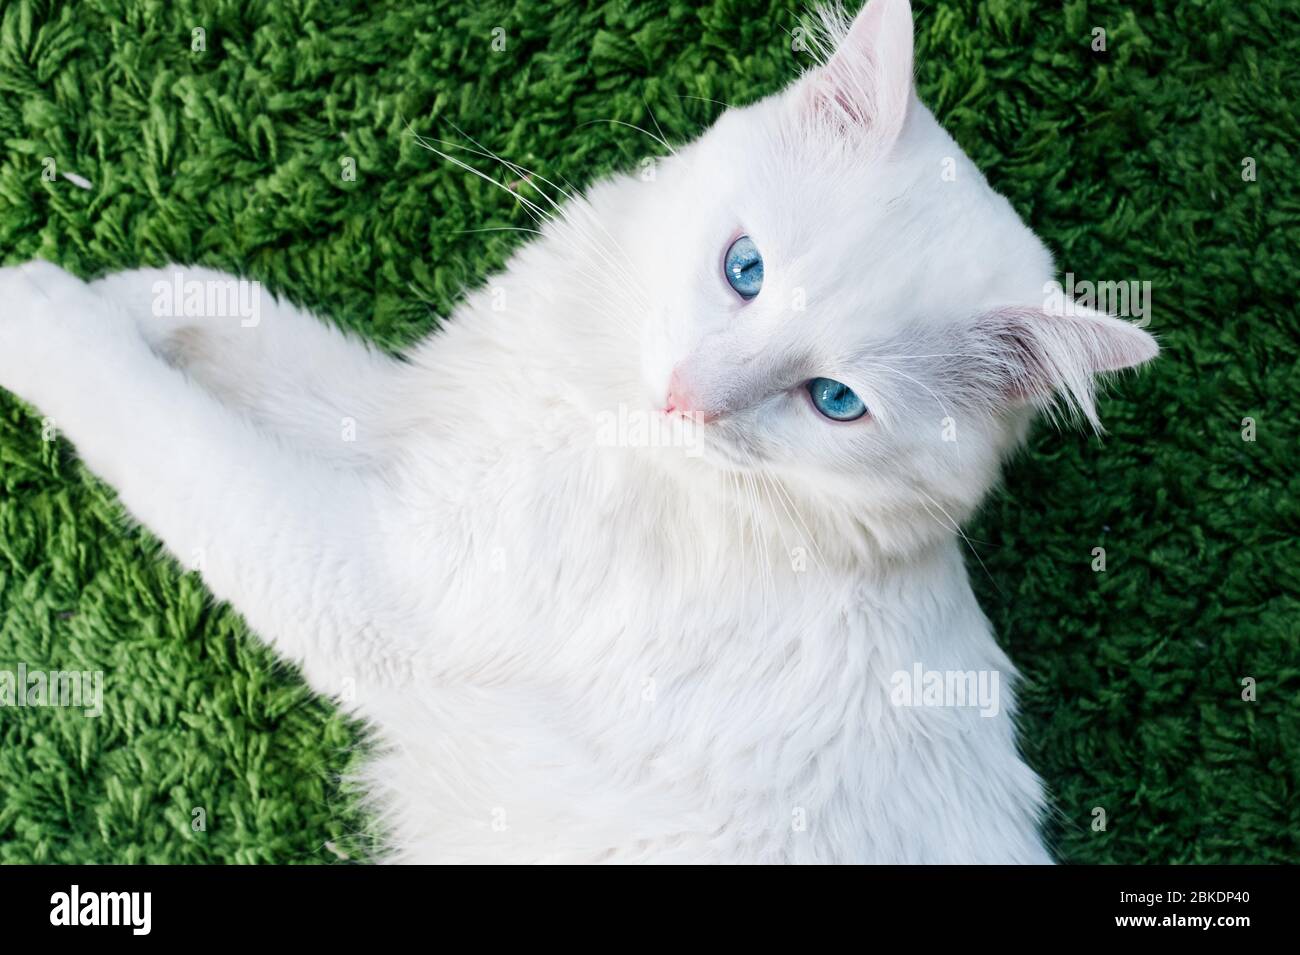 Gros plan de chat blanc avec yeux bleus posés paisiblement sur le tapis vert. Vue de dessus Banque D'Images